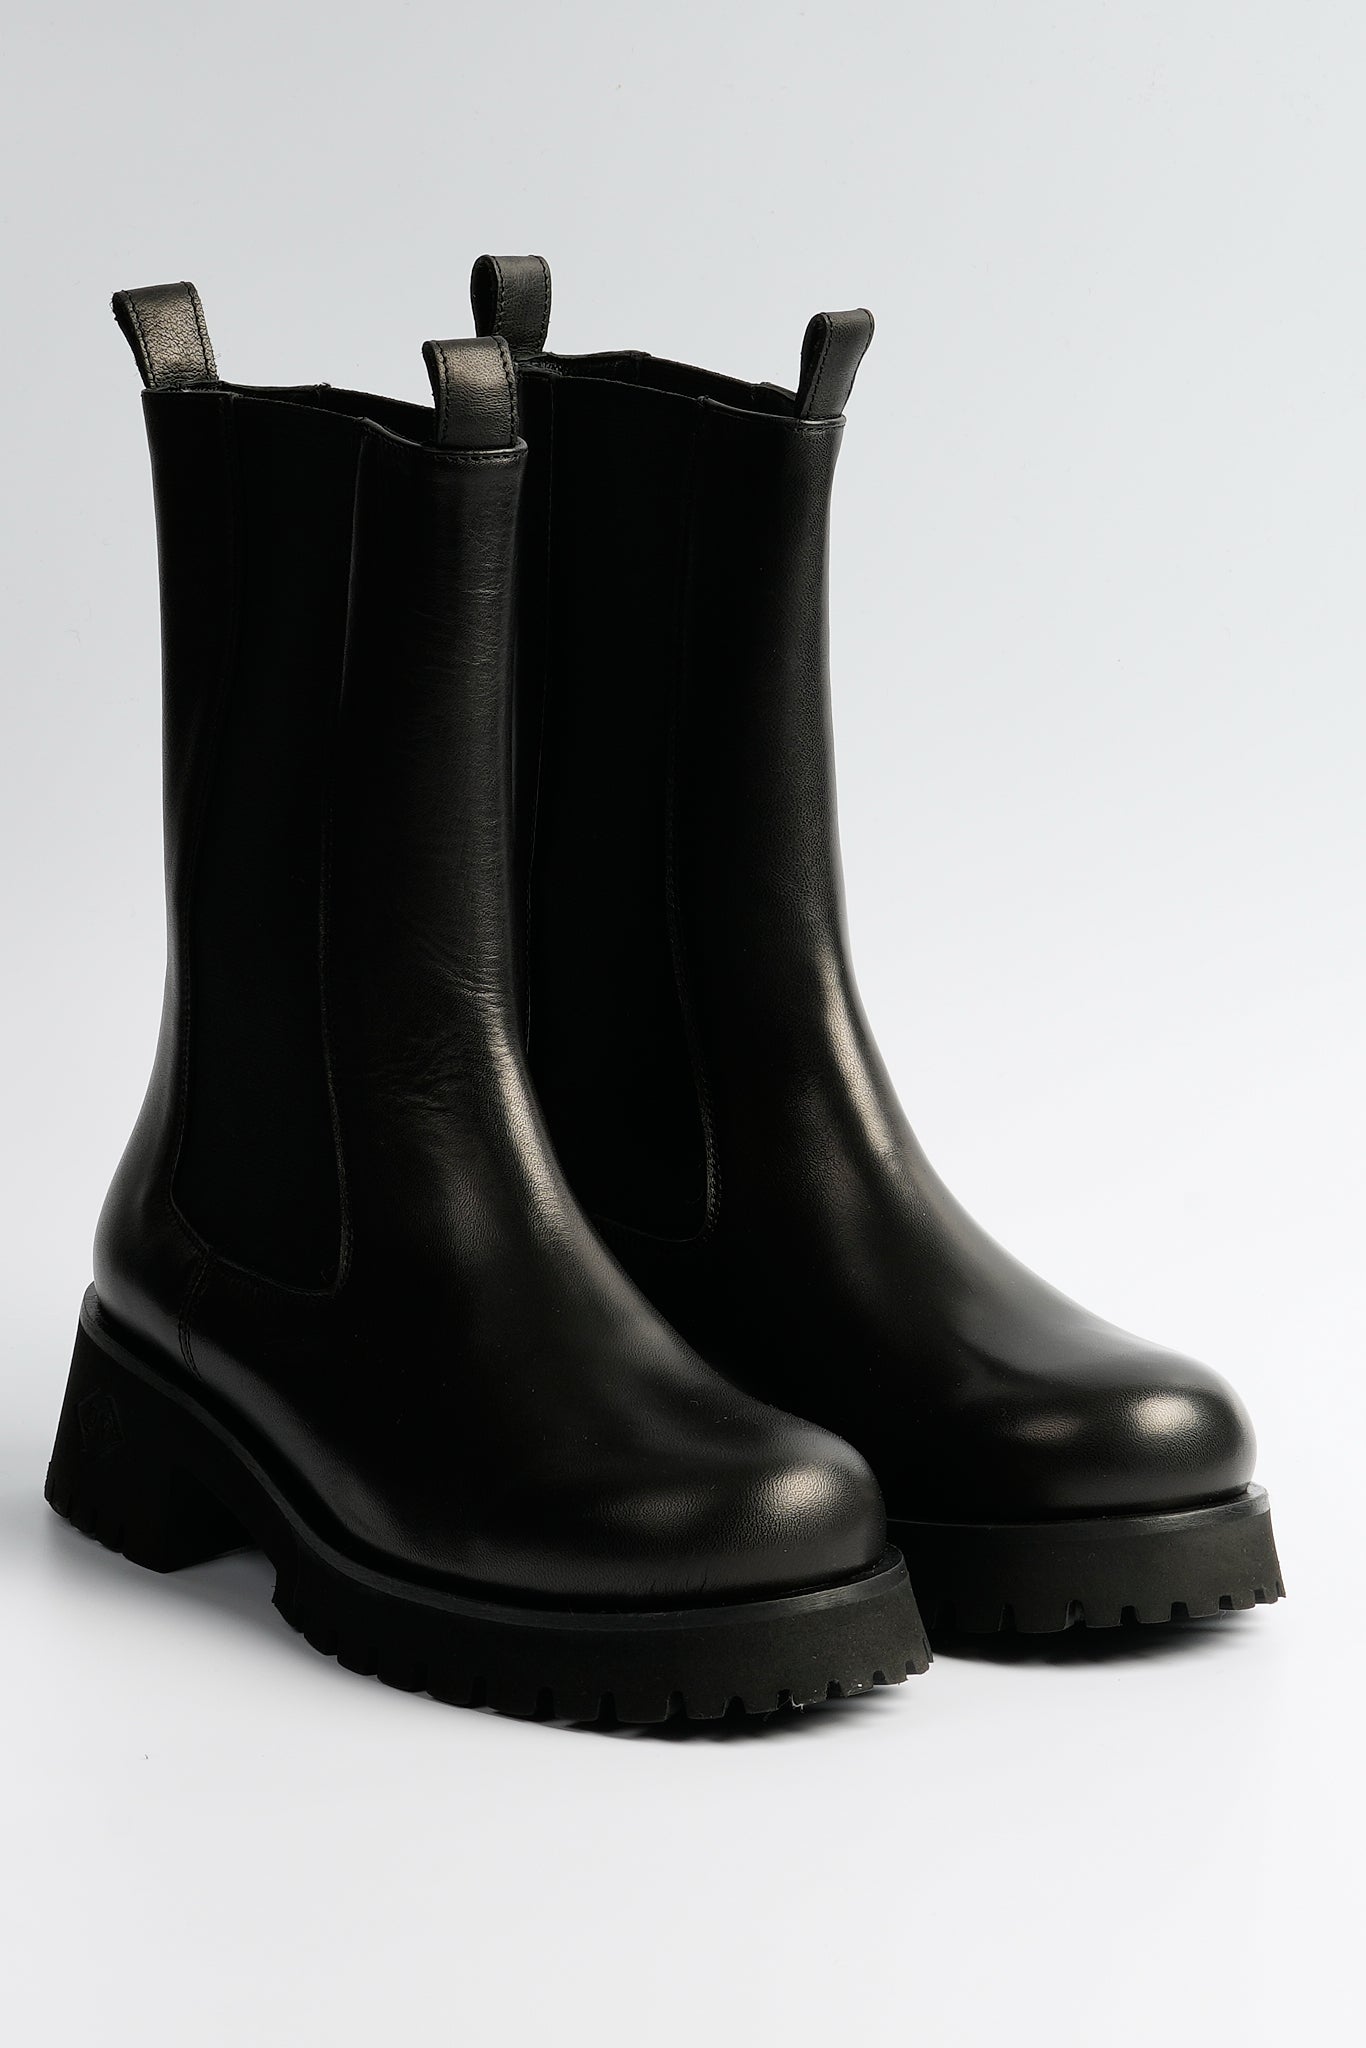 Poesie Veneziane Boot Leather Black Women-2